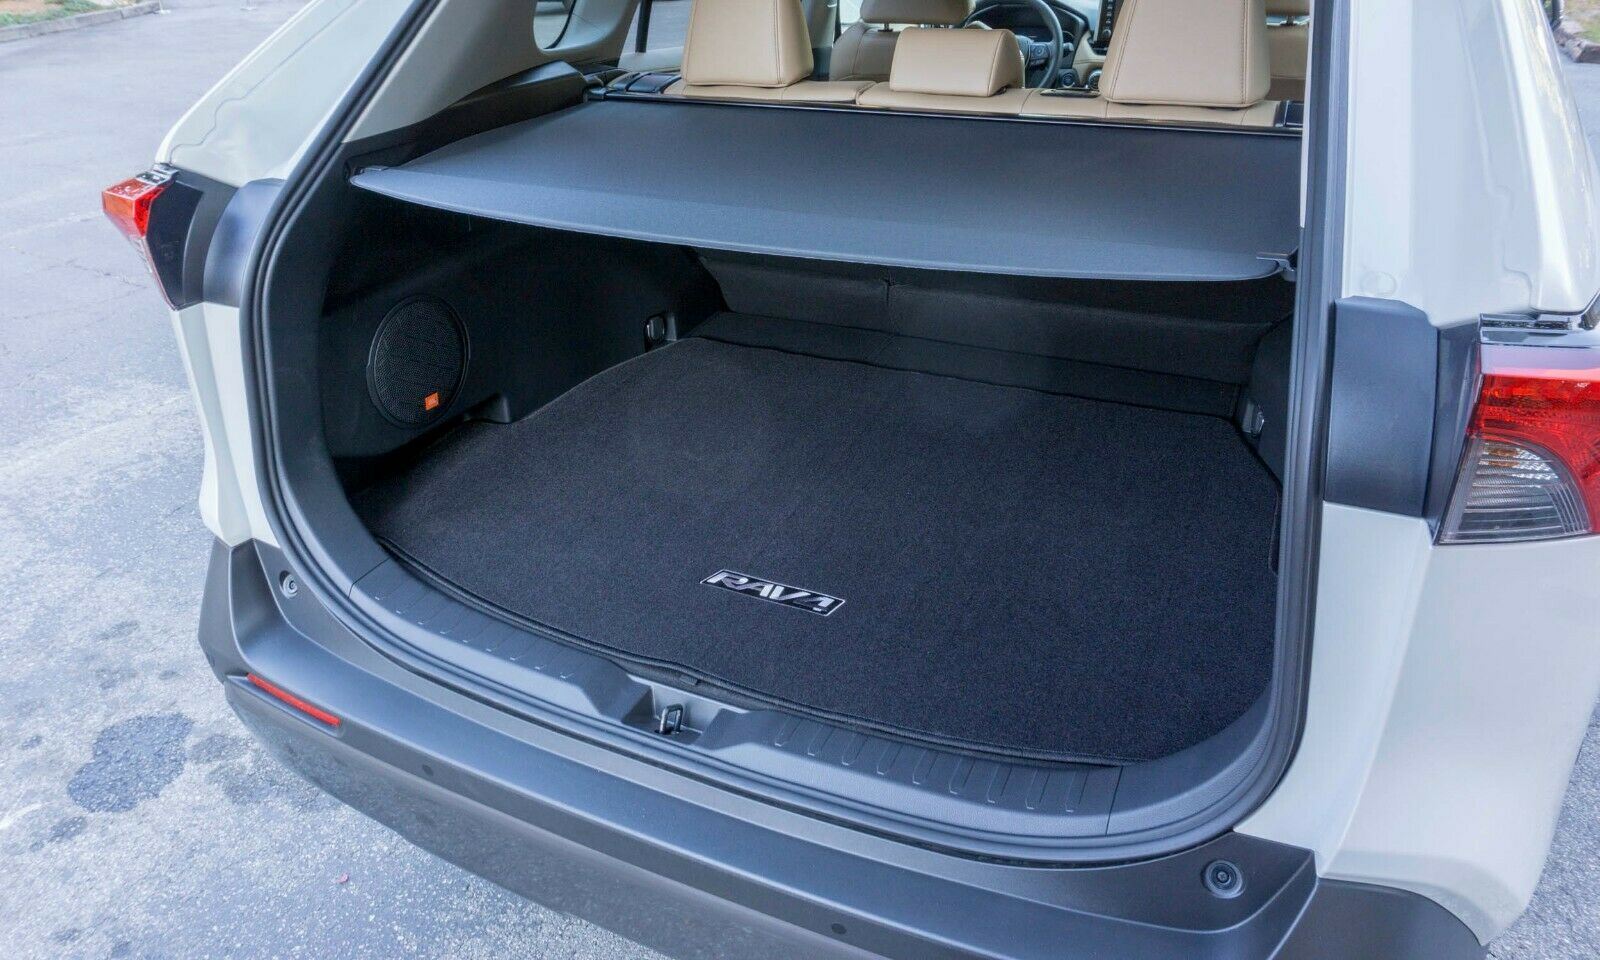 Se adapta a la cubierta de carga Tonneau retráctil del maletero trasero del equipaje Toyota RAV4 2019-2020 y la red gratis (negro)